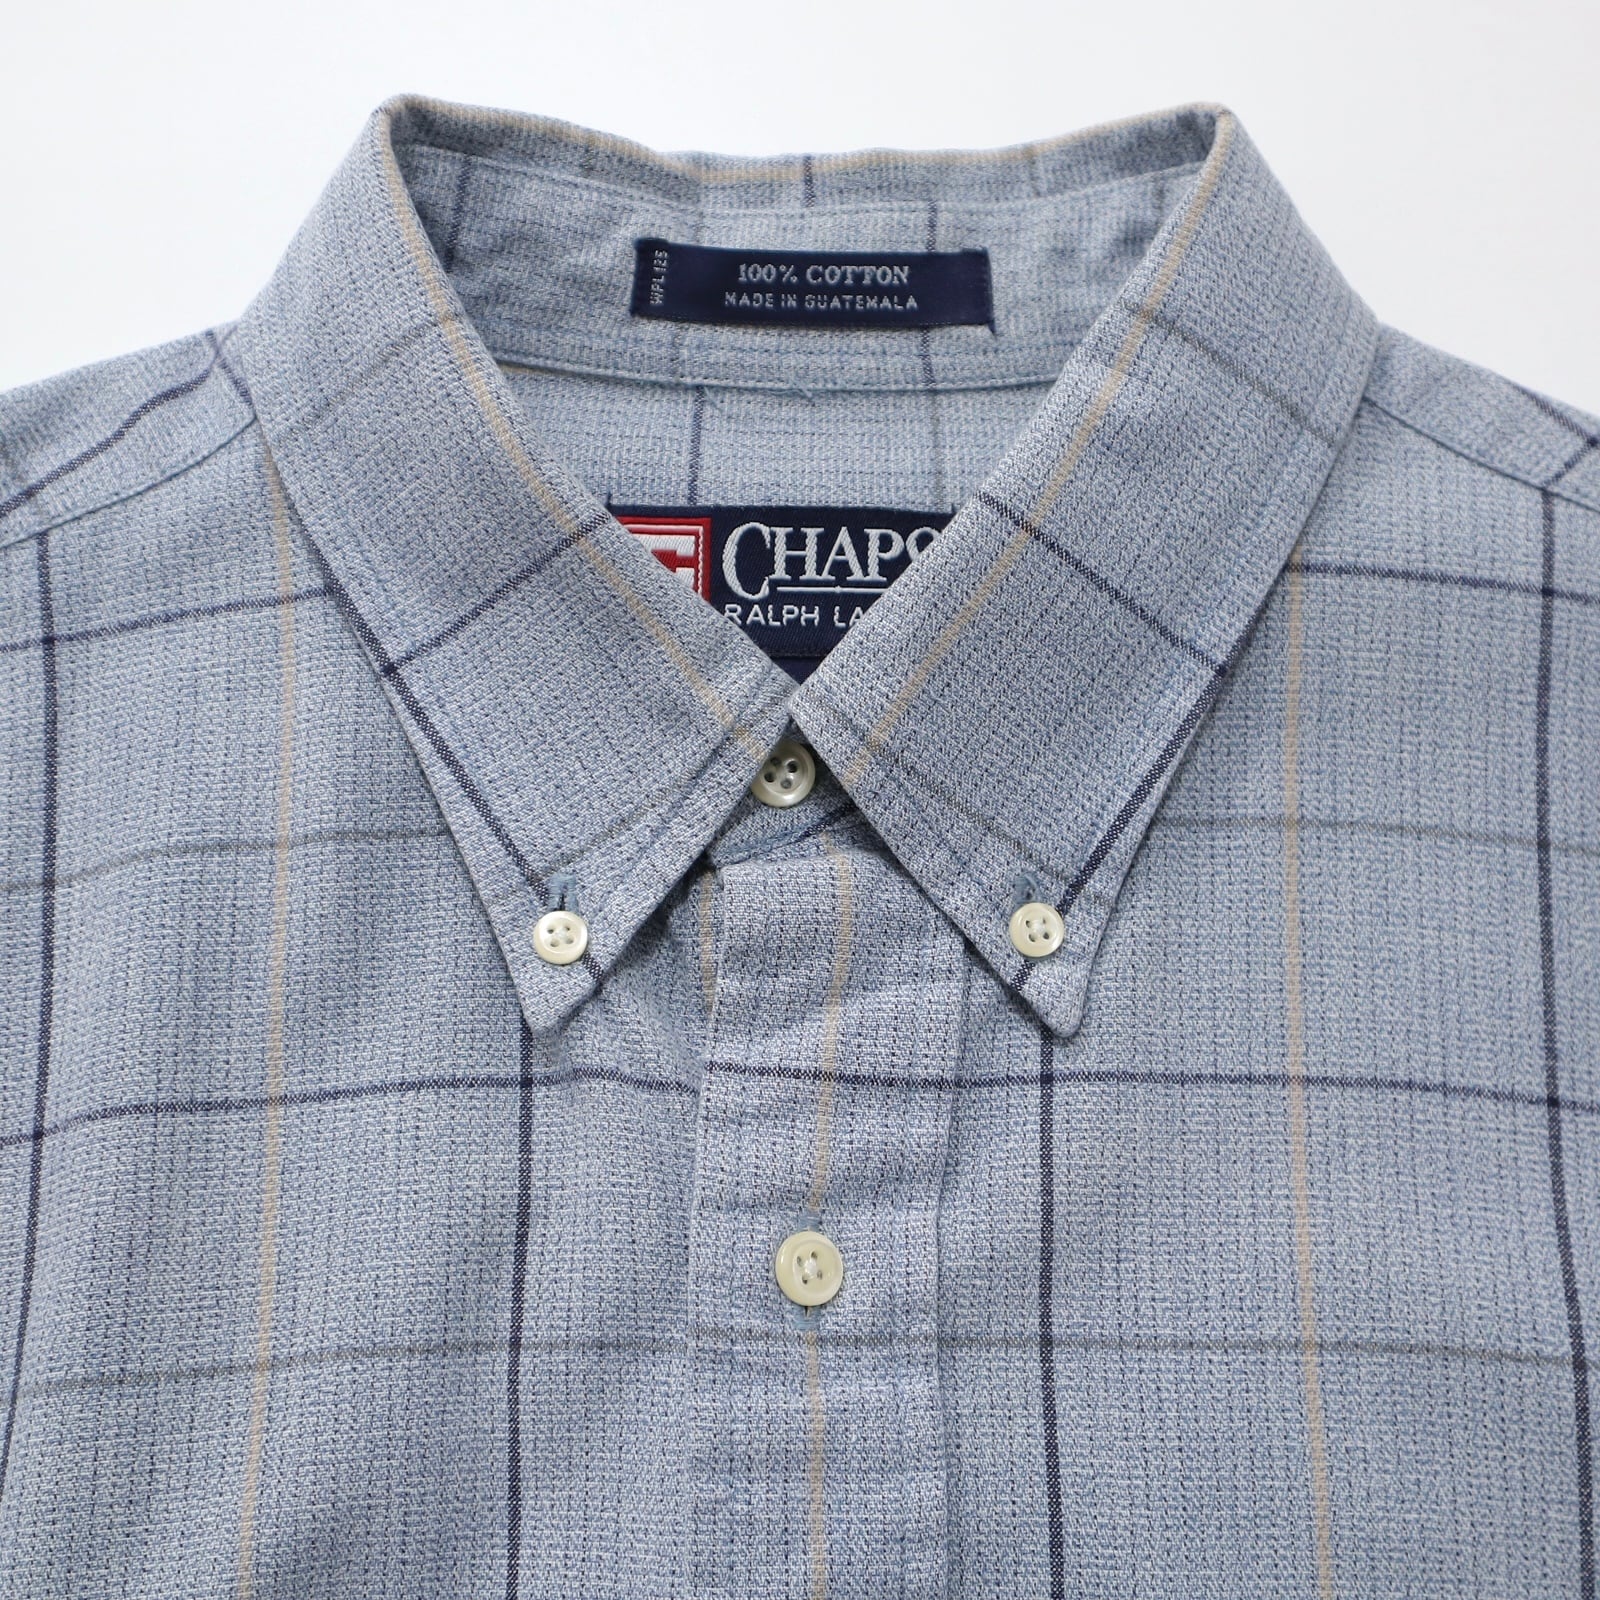 90s CHAPS Ralph Lauren チェックシャツ ボタンダウン長袖シャツ